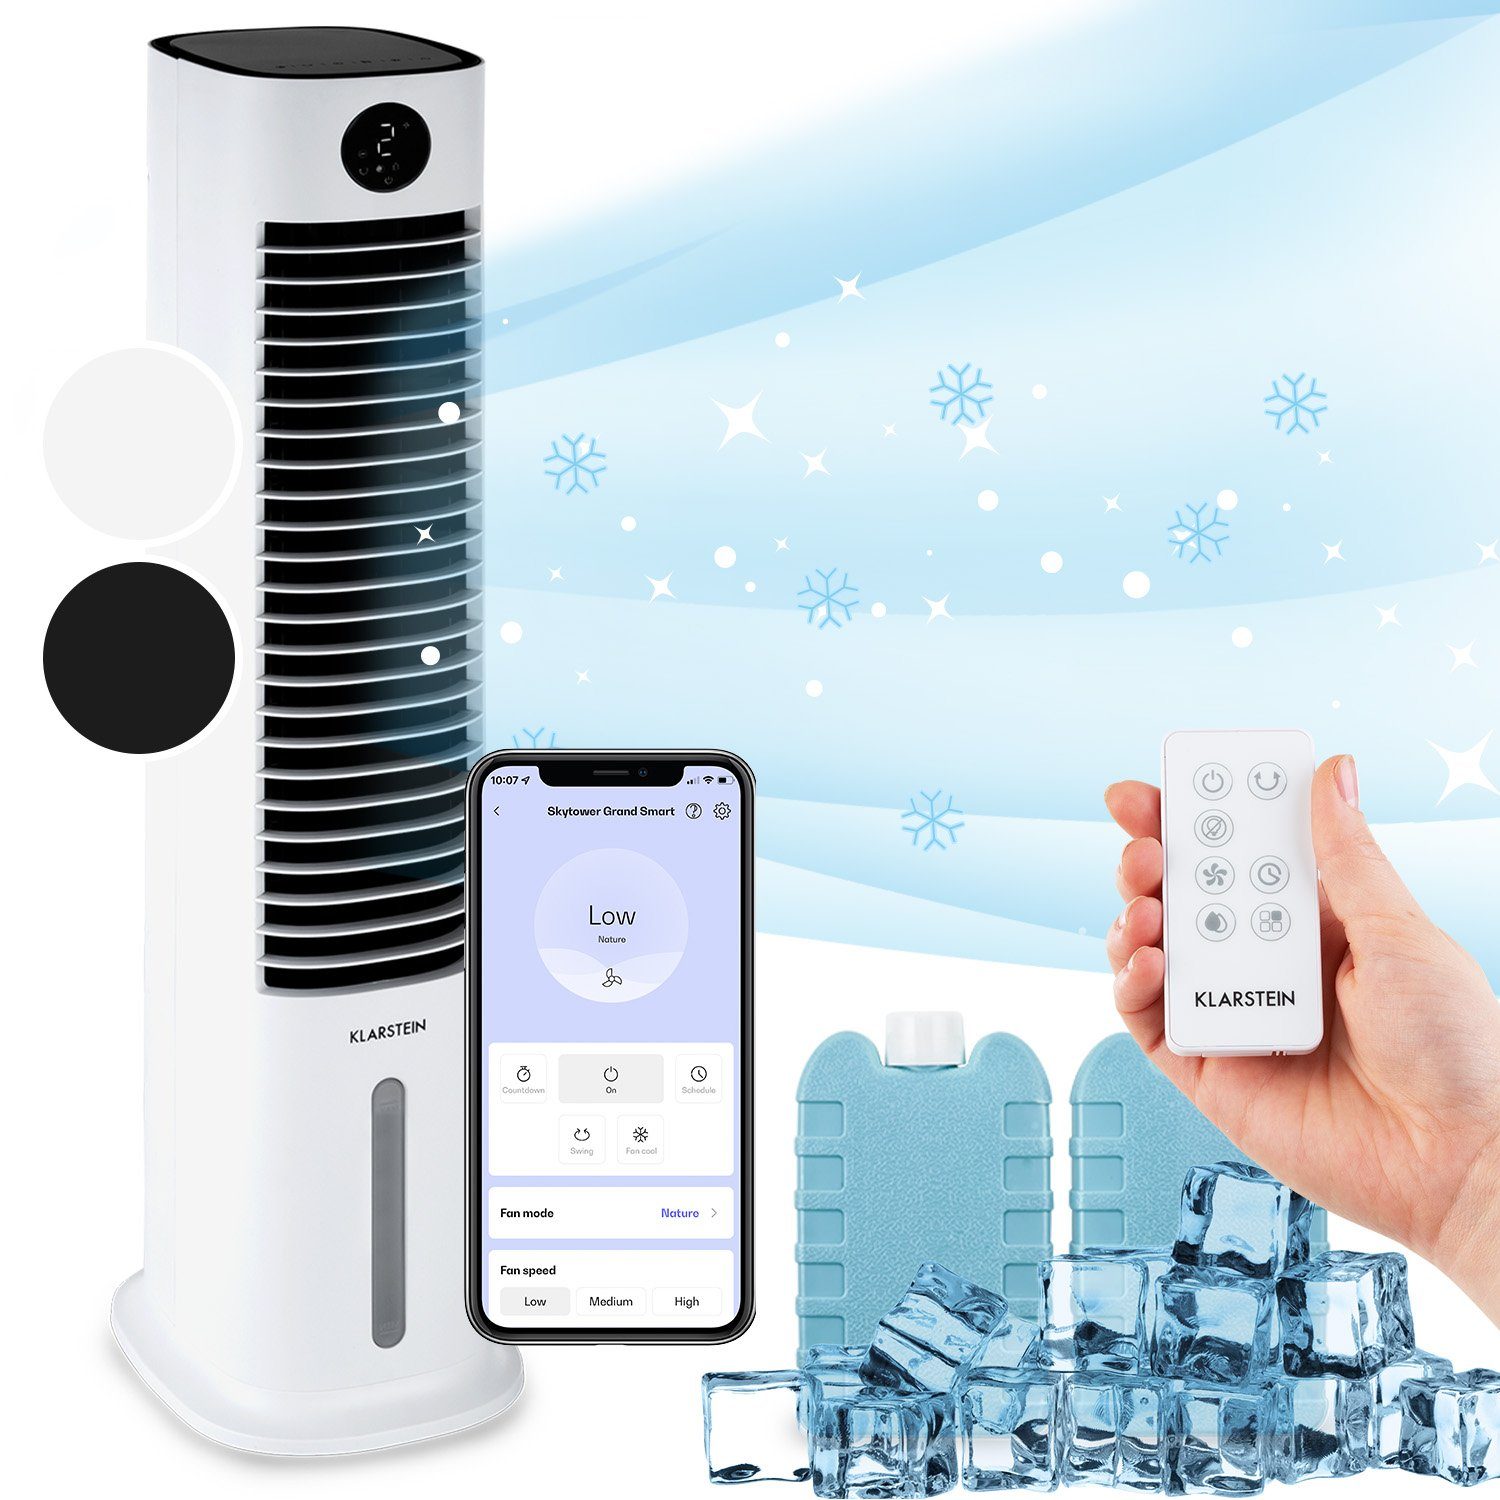 Klarstein Ventilatorkombigerät Skytower Grand & Klimagerät Smart ohne Eis Luftkühler, Abluftschlauch mobil mit Wasserkühlung